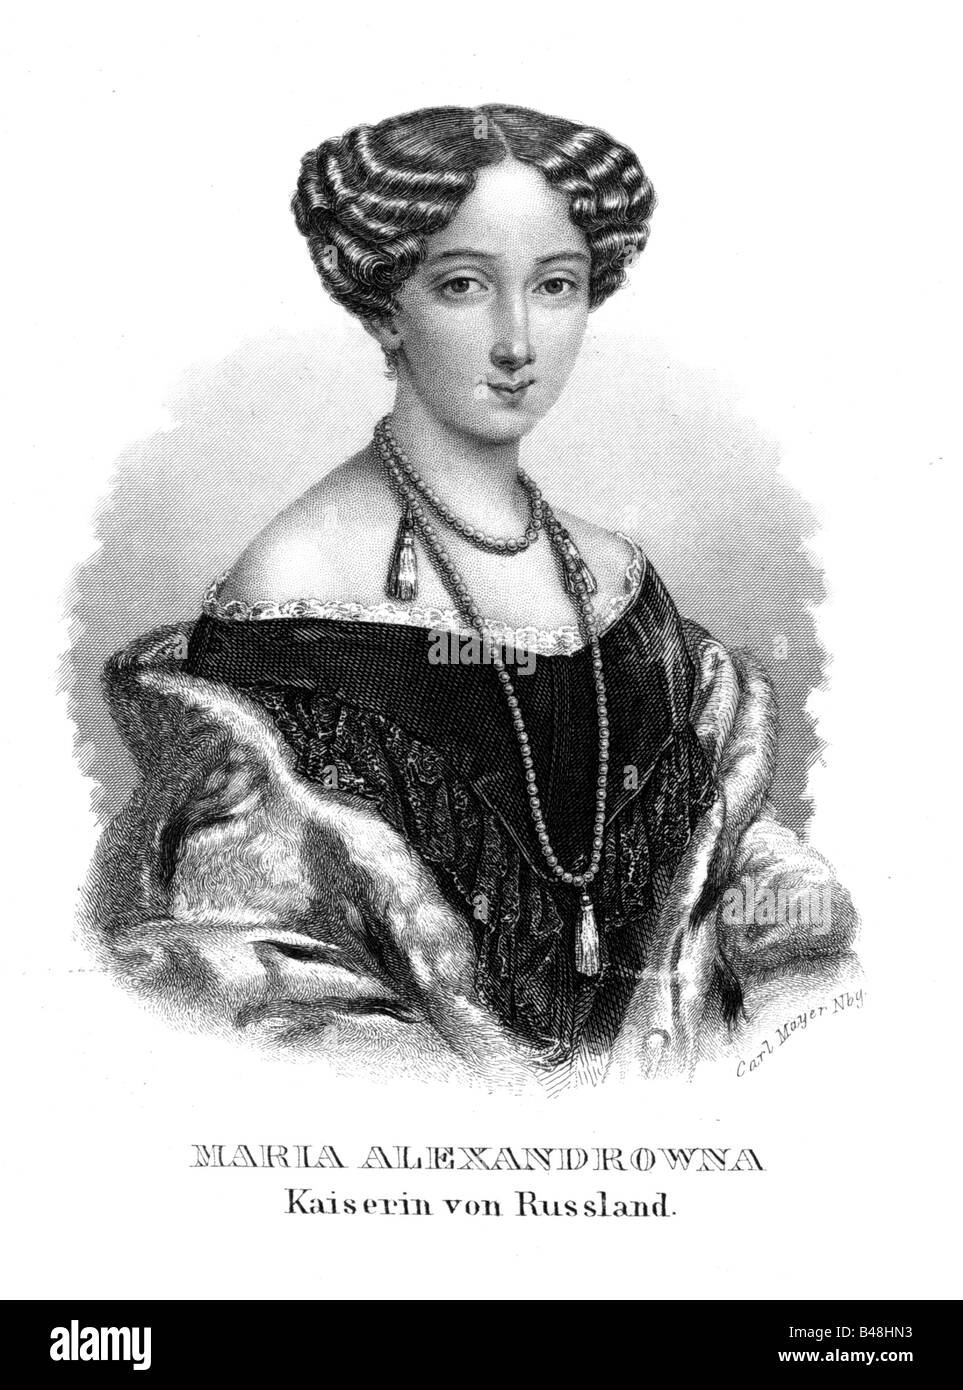 María Alexandrovna, 8.8.1824 - 3.6.1880, la emperatriz de Rusia 18.2.1855 - 3.6.1880, retrato, acero grabado, del siglo xix, , Artist's Copyright no ha de ser borrado Foto de stock